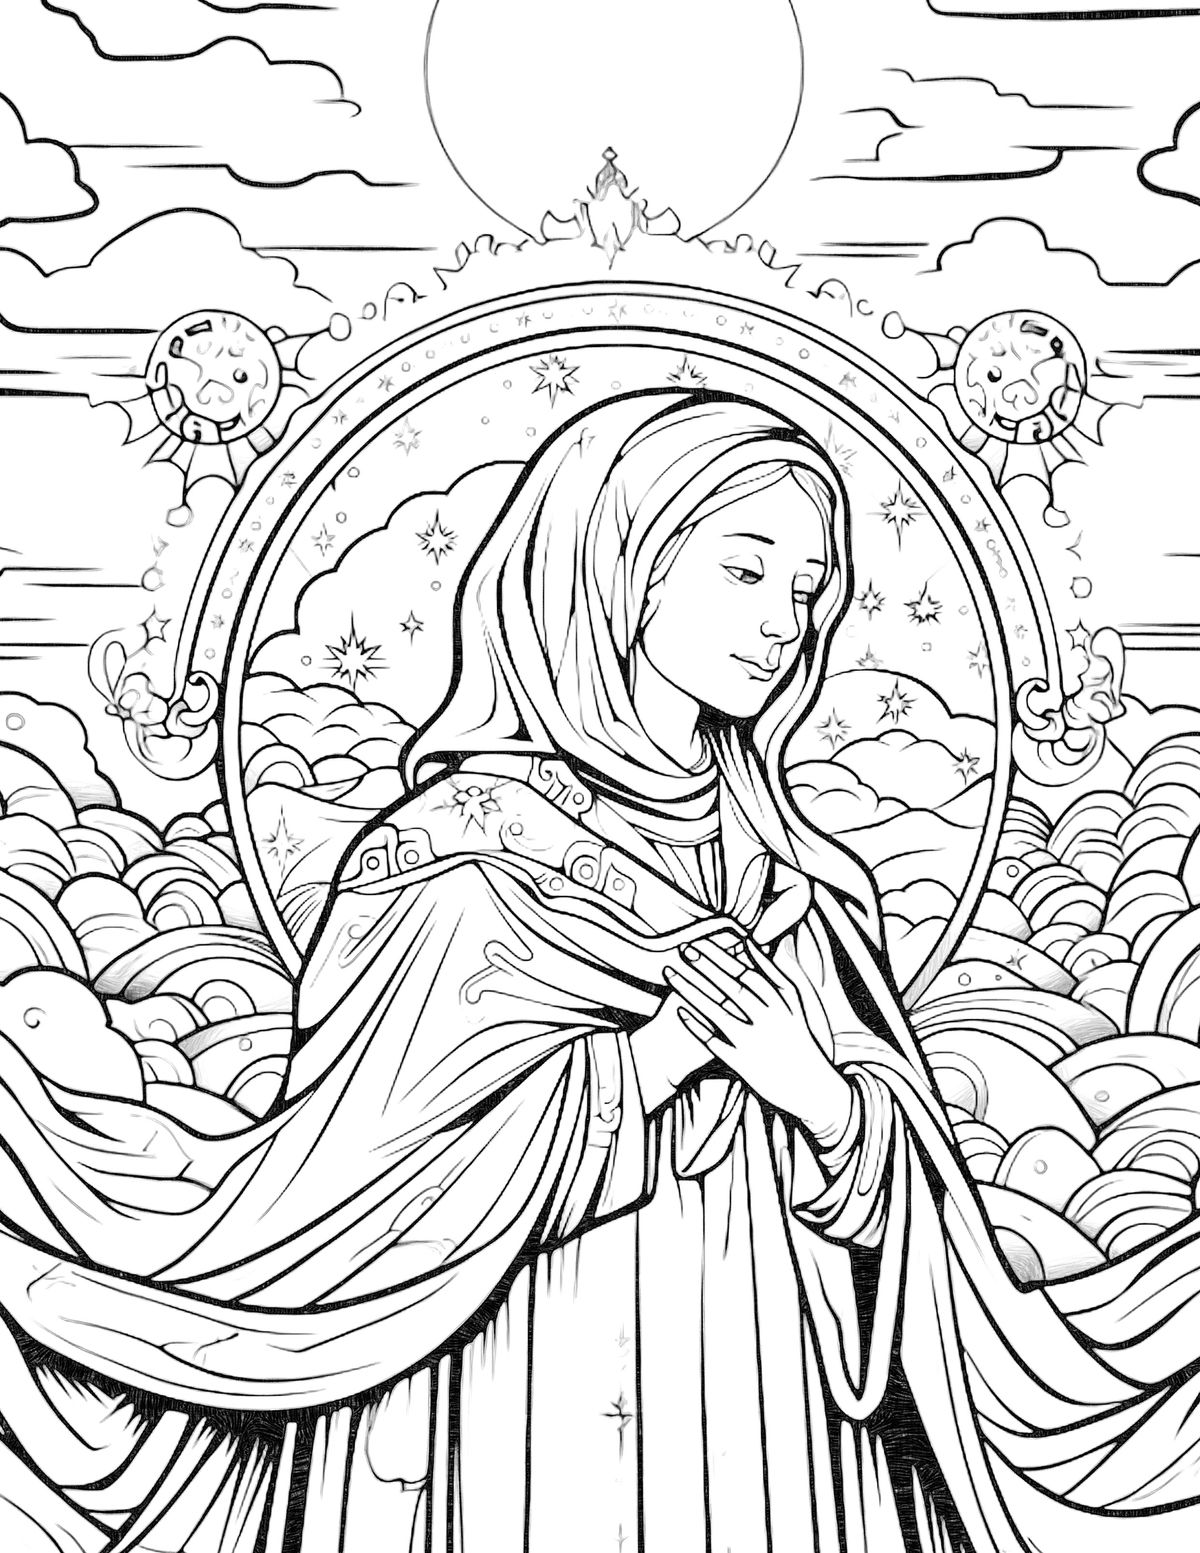 Female saints coloring pages